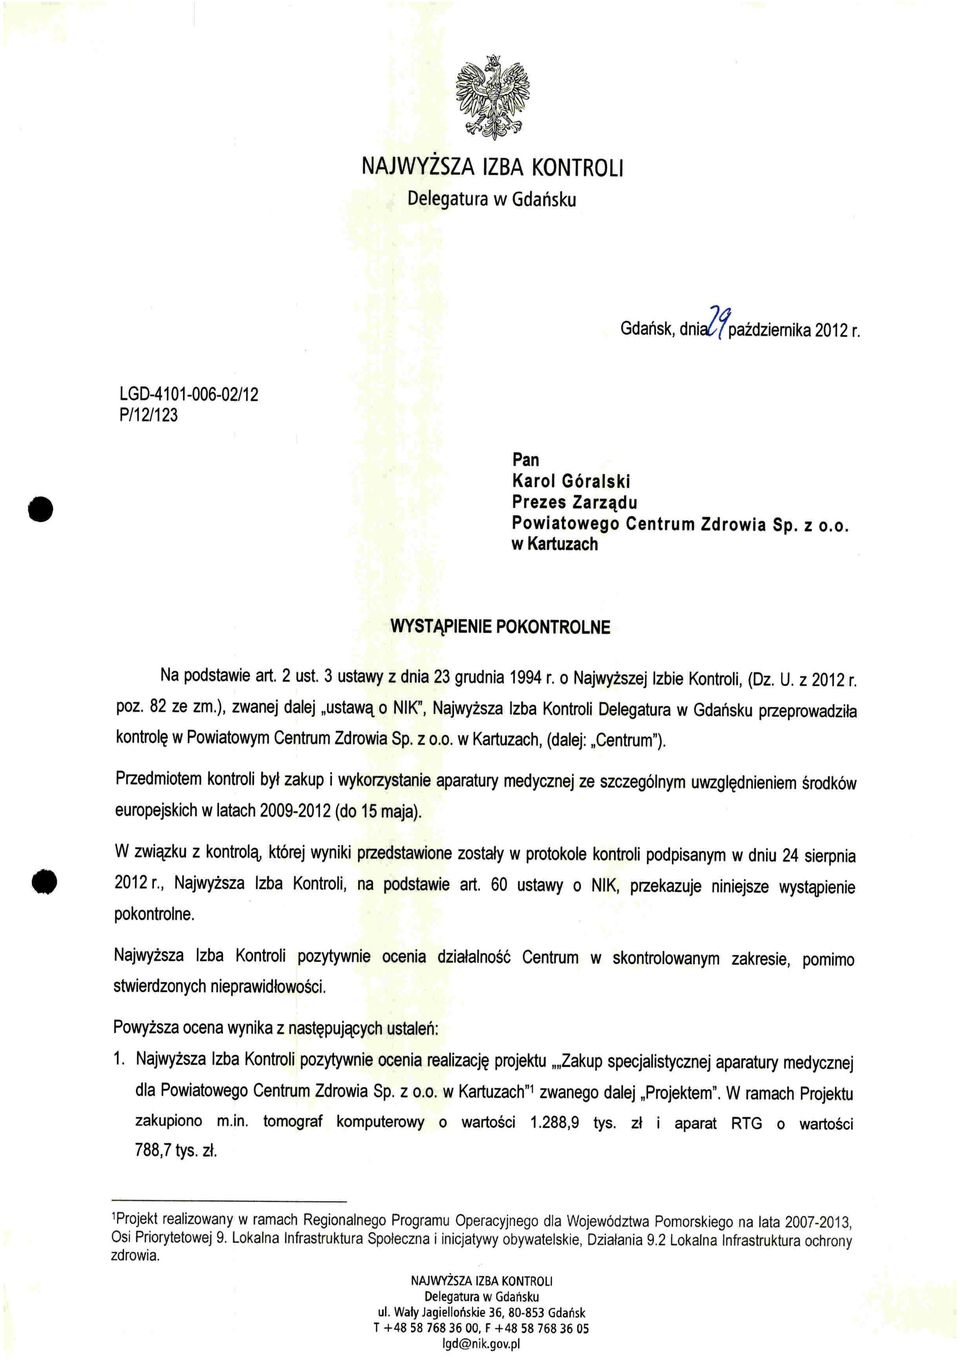 ), zwanej dalej "ustawą o NIK", Najwyższa Izba Kontroli Delegatura w Gdańsku przeprowadziła kontrolę w Powiatowym Centrum Zdrowia Sp. z 0.0. w Kartuzach, (dalej: "Centrum").